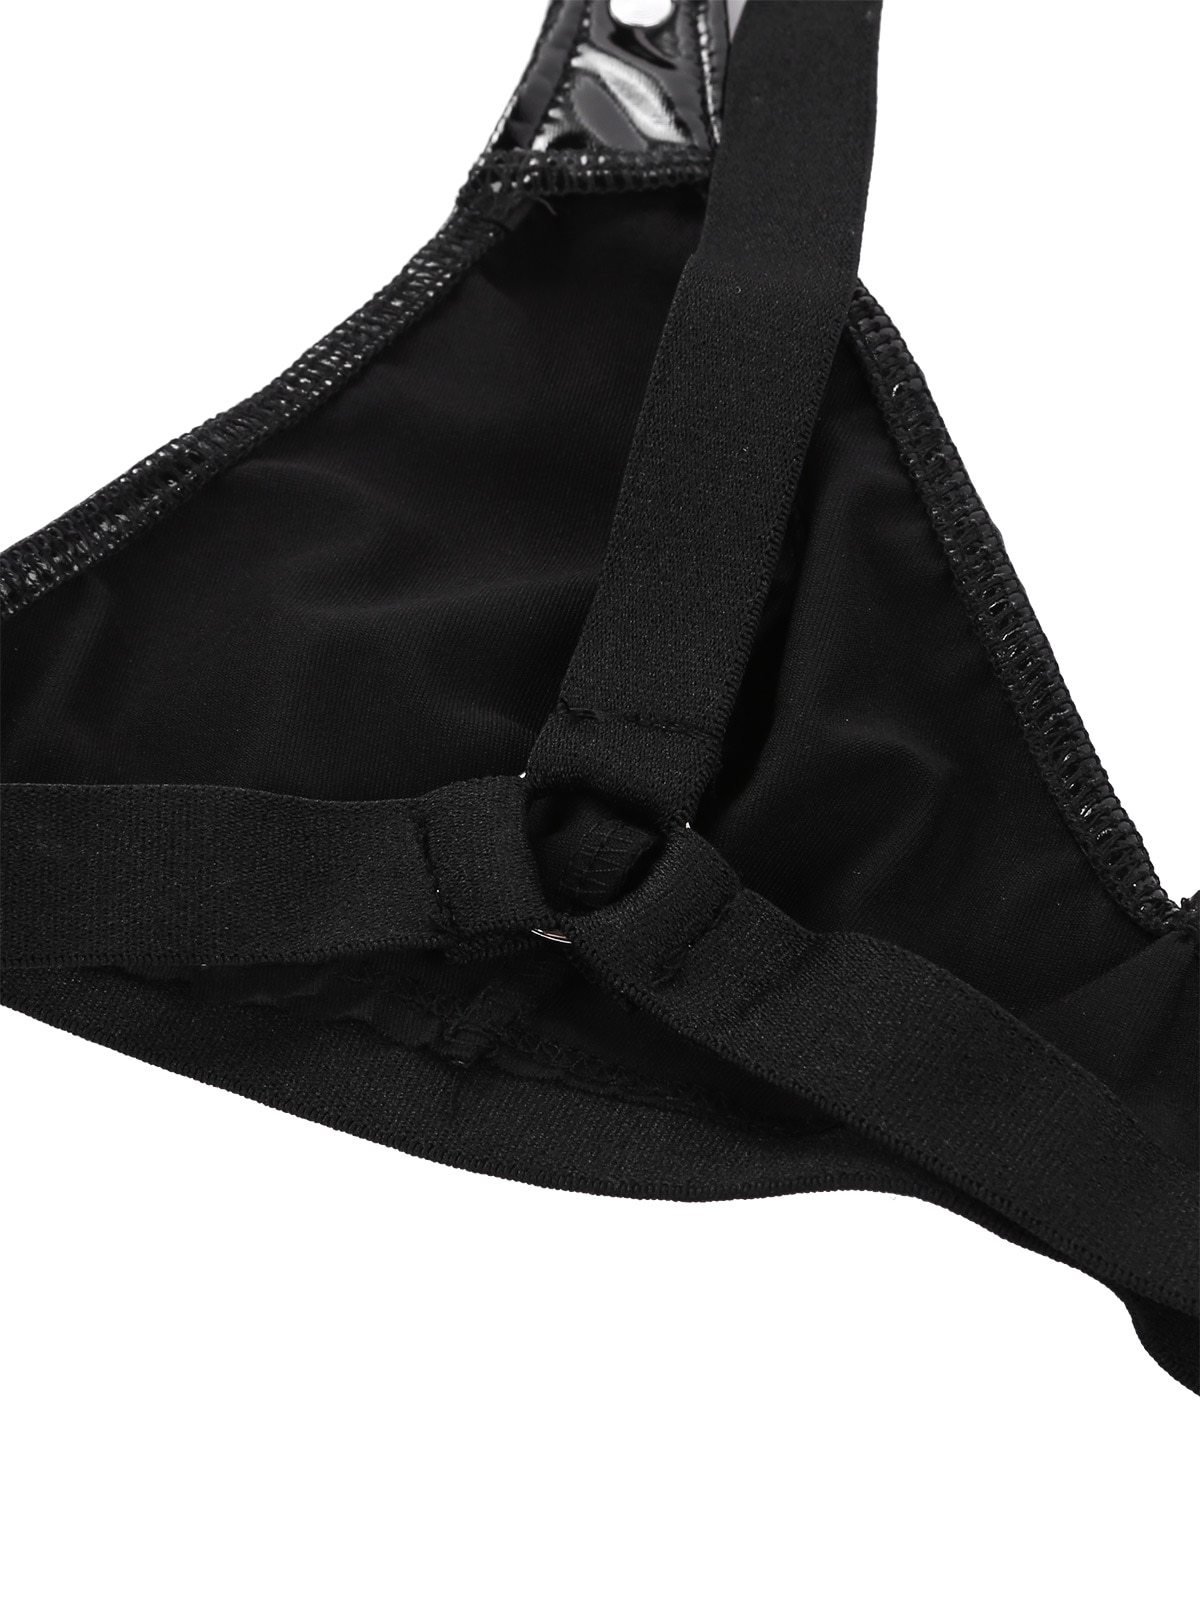 Sexy Women's Underwear Set / Rave Underwear / Elastic Straps Bikini Bra ...